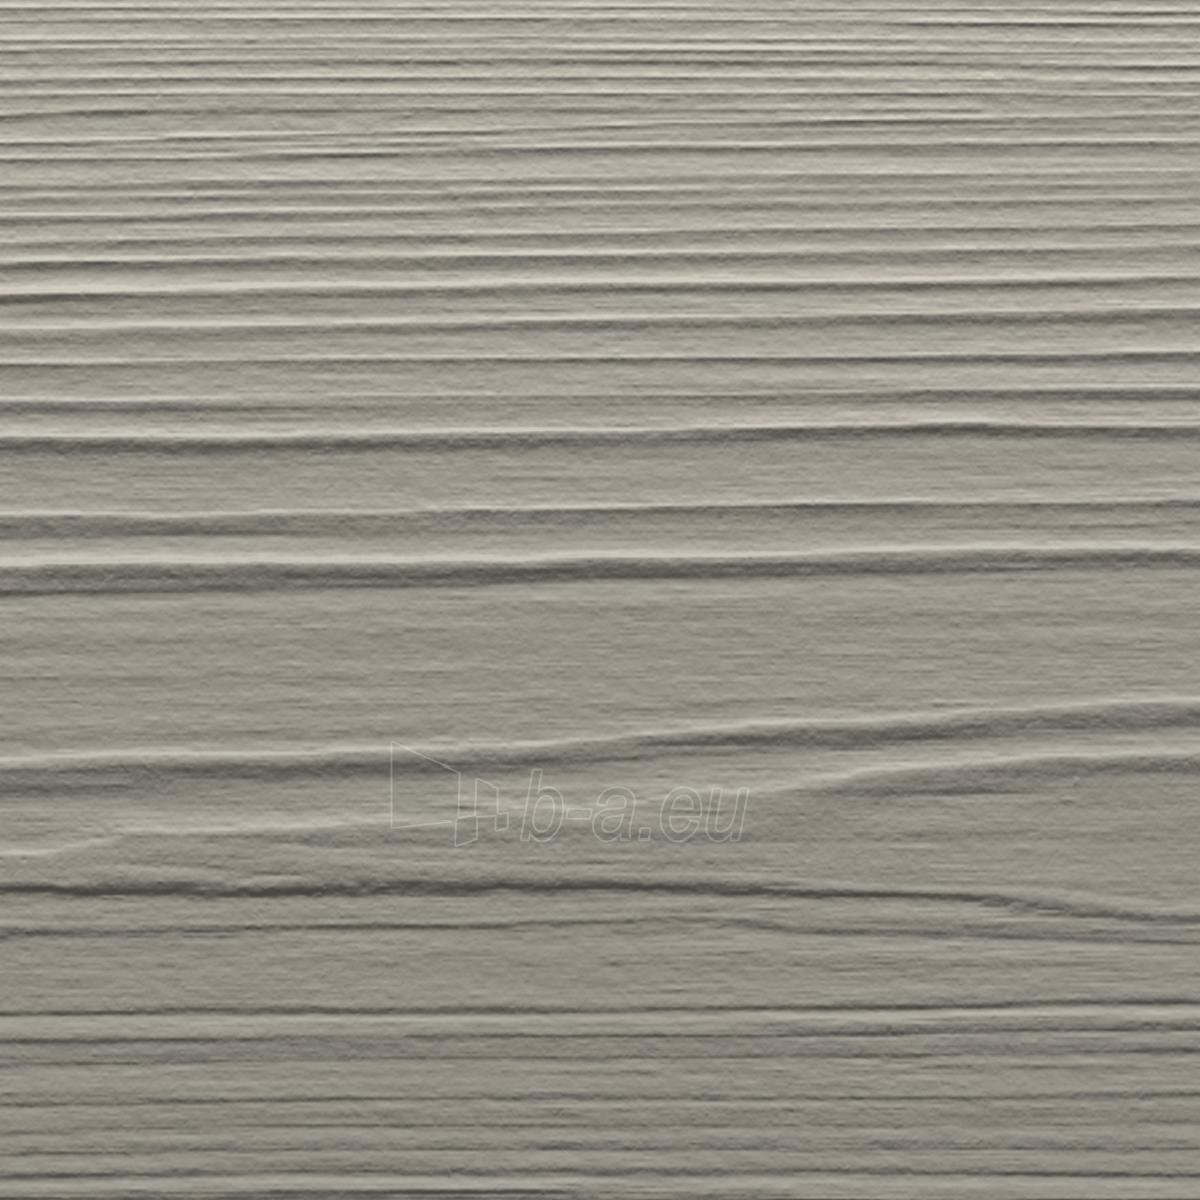 Fibrocementinė dailylentė Hardie® Plank (Pearl grey) medžio imitacija paveikslėlis 2 iš 2